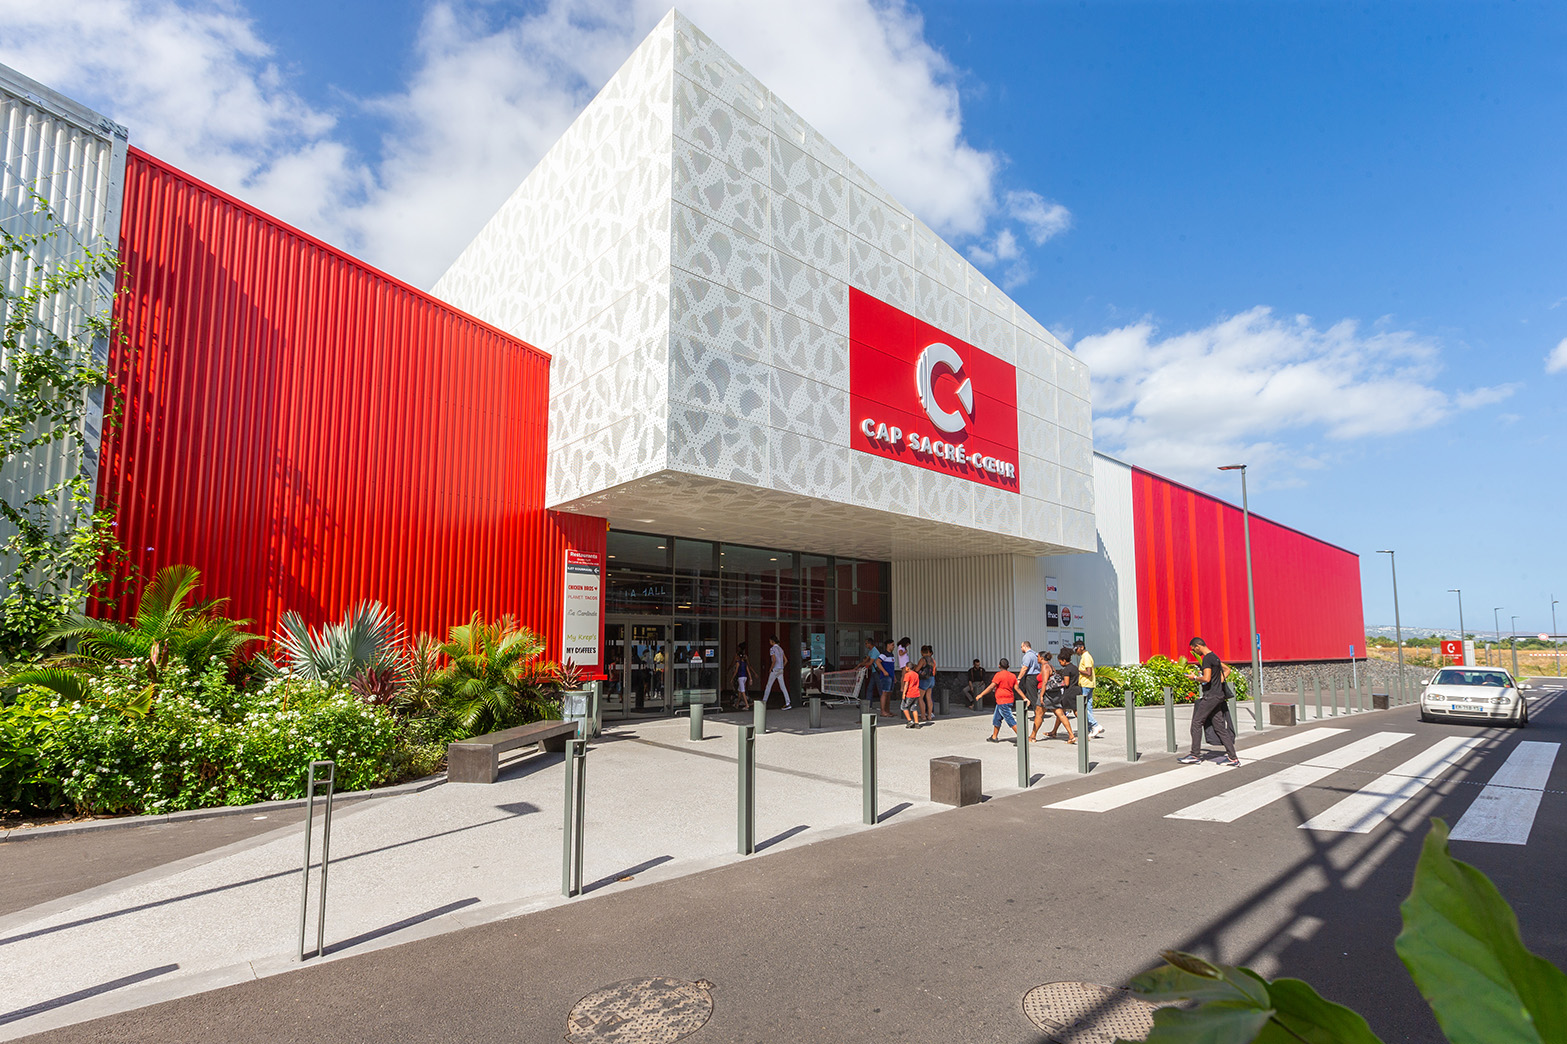 Carrefour Réunion - 🎁 𝗝𝗘𝗨 𝗖𝗢𝗡𝗖𝗢𝗨𝗥𝗦 🎁 Les